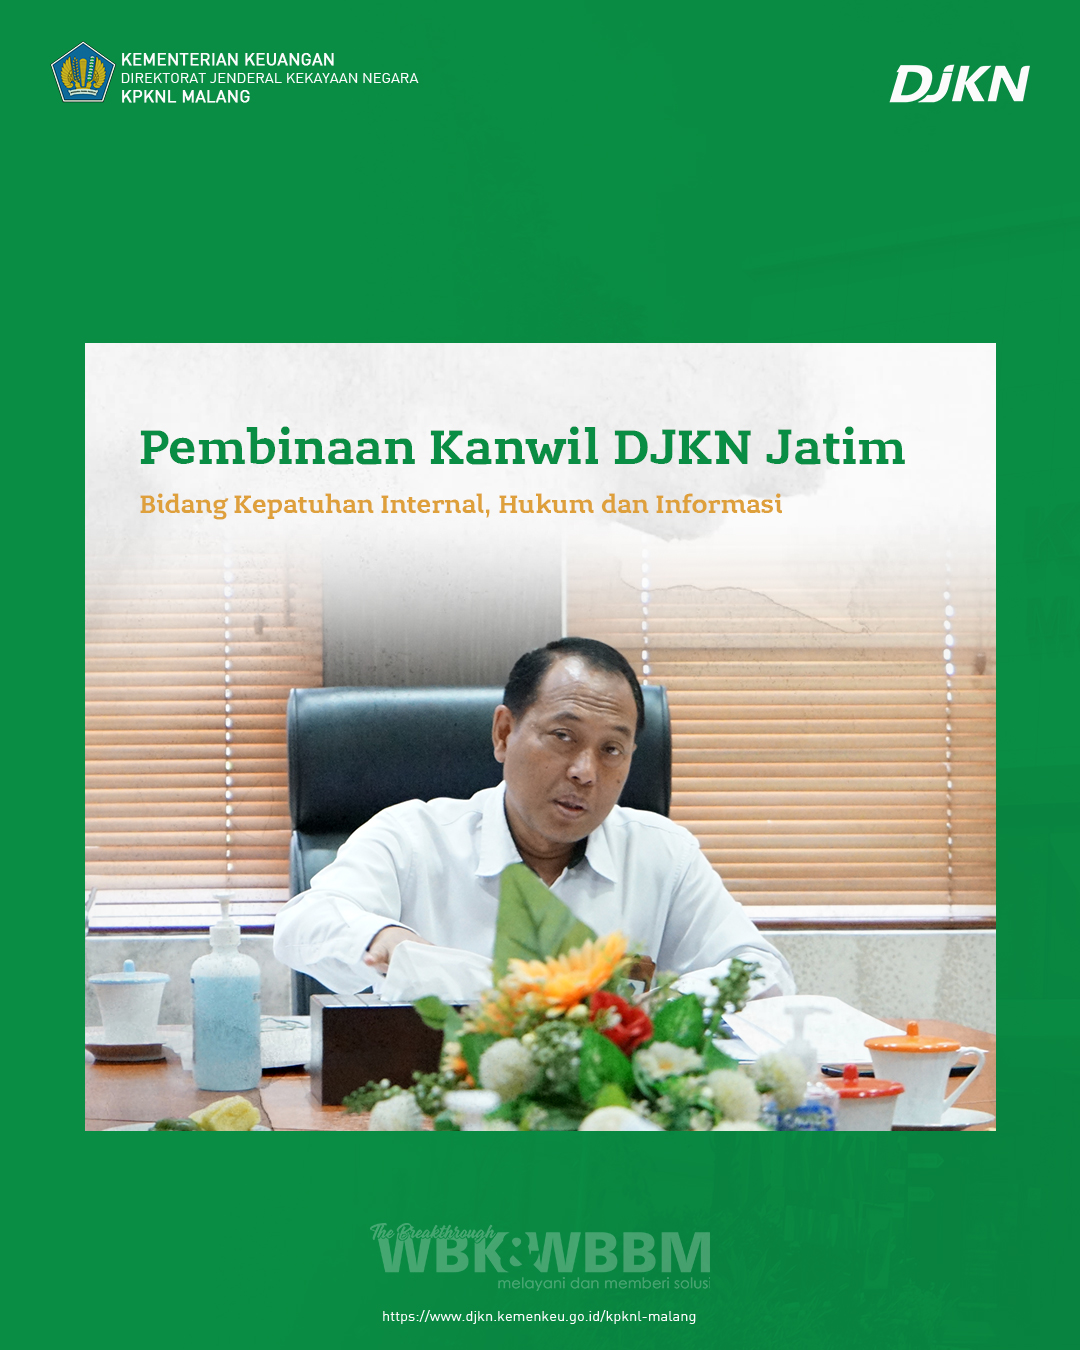 Pembinaan Kanwil DJKN Jawa Timur pada KPKNL Malang: Jaga Fokus Sampai Dengan Akhir Triwulan IV